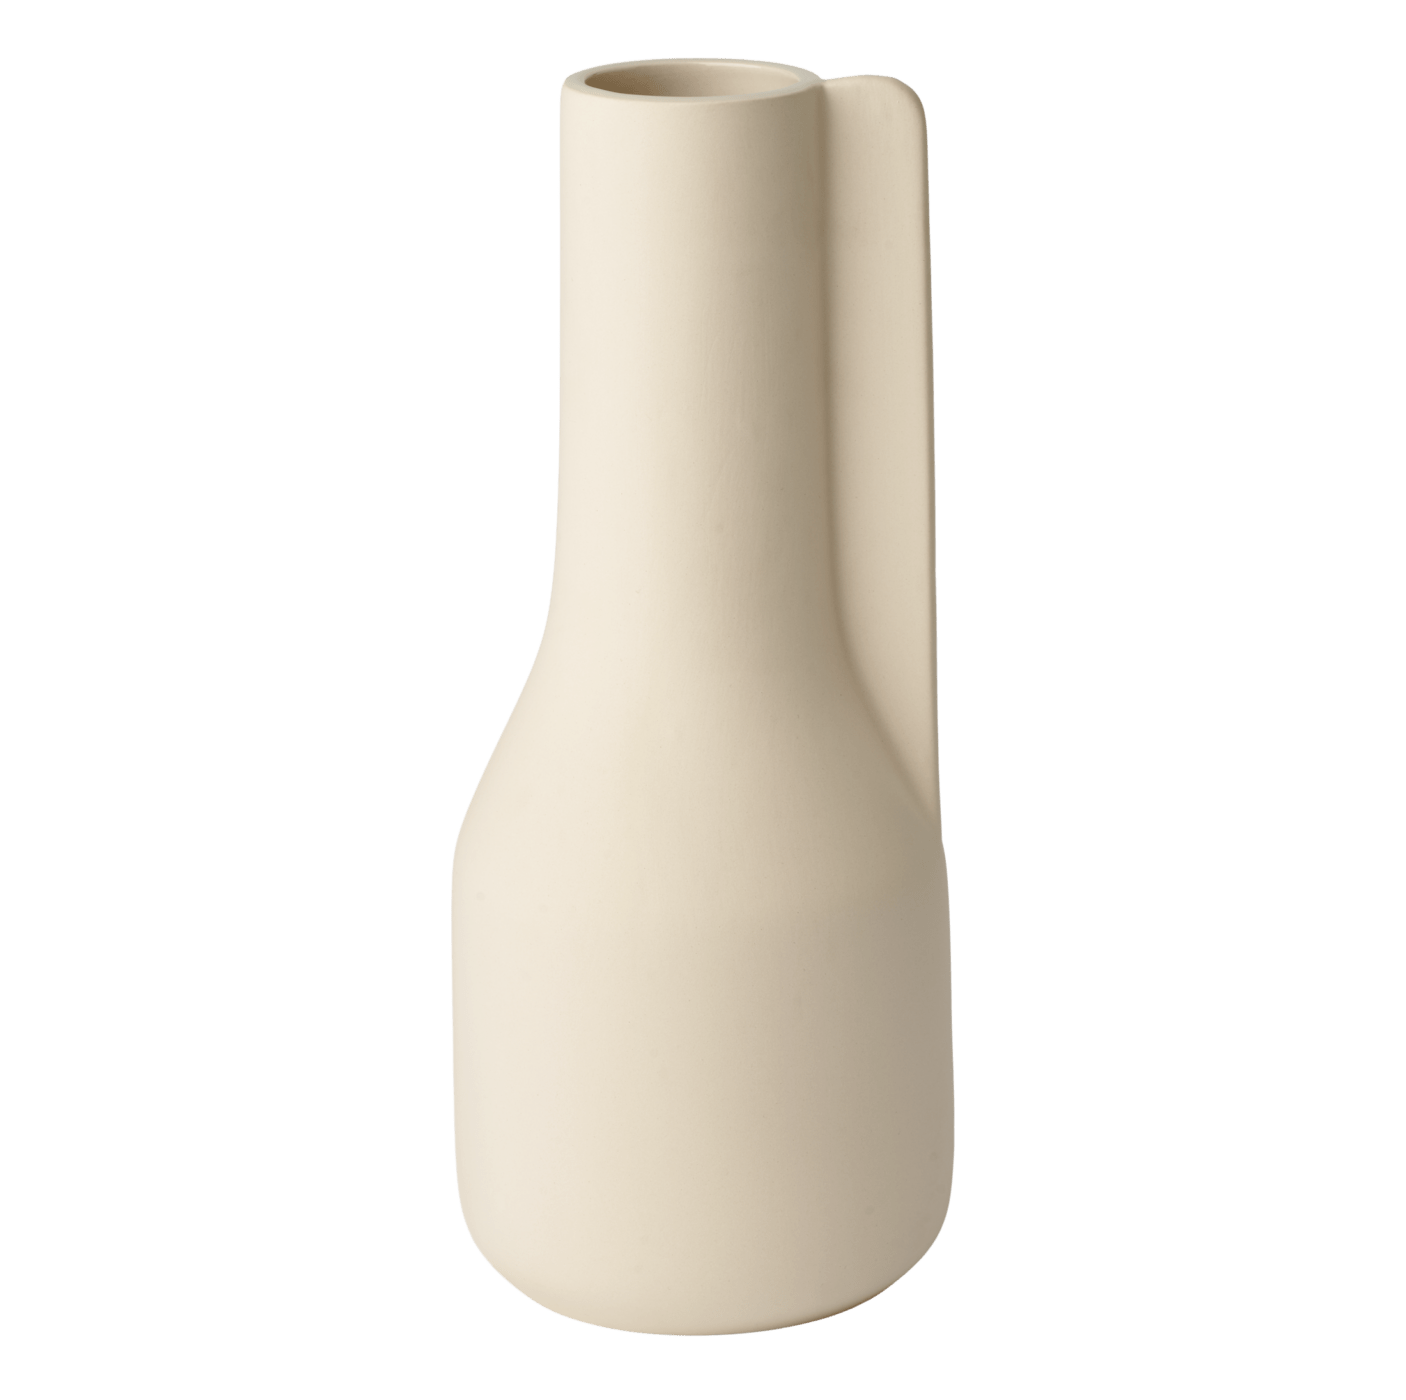 Bolia Falda vase 34 cm // Falda váza 34 cm